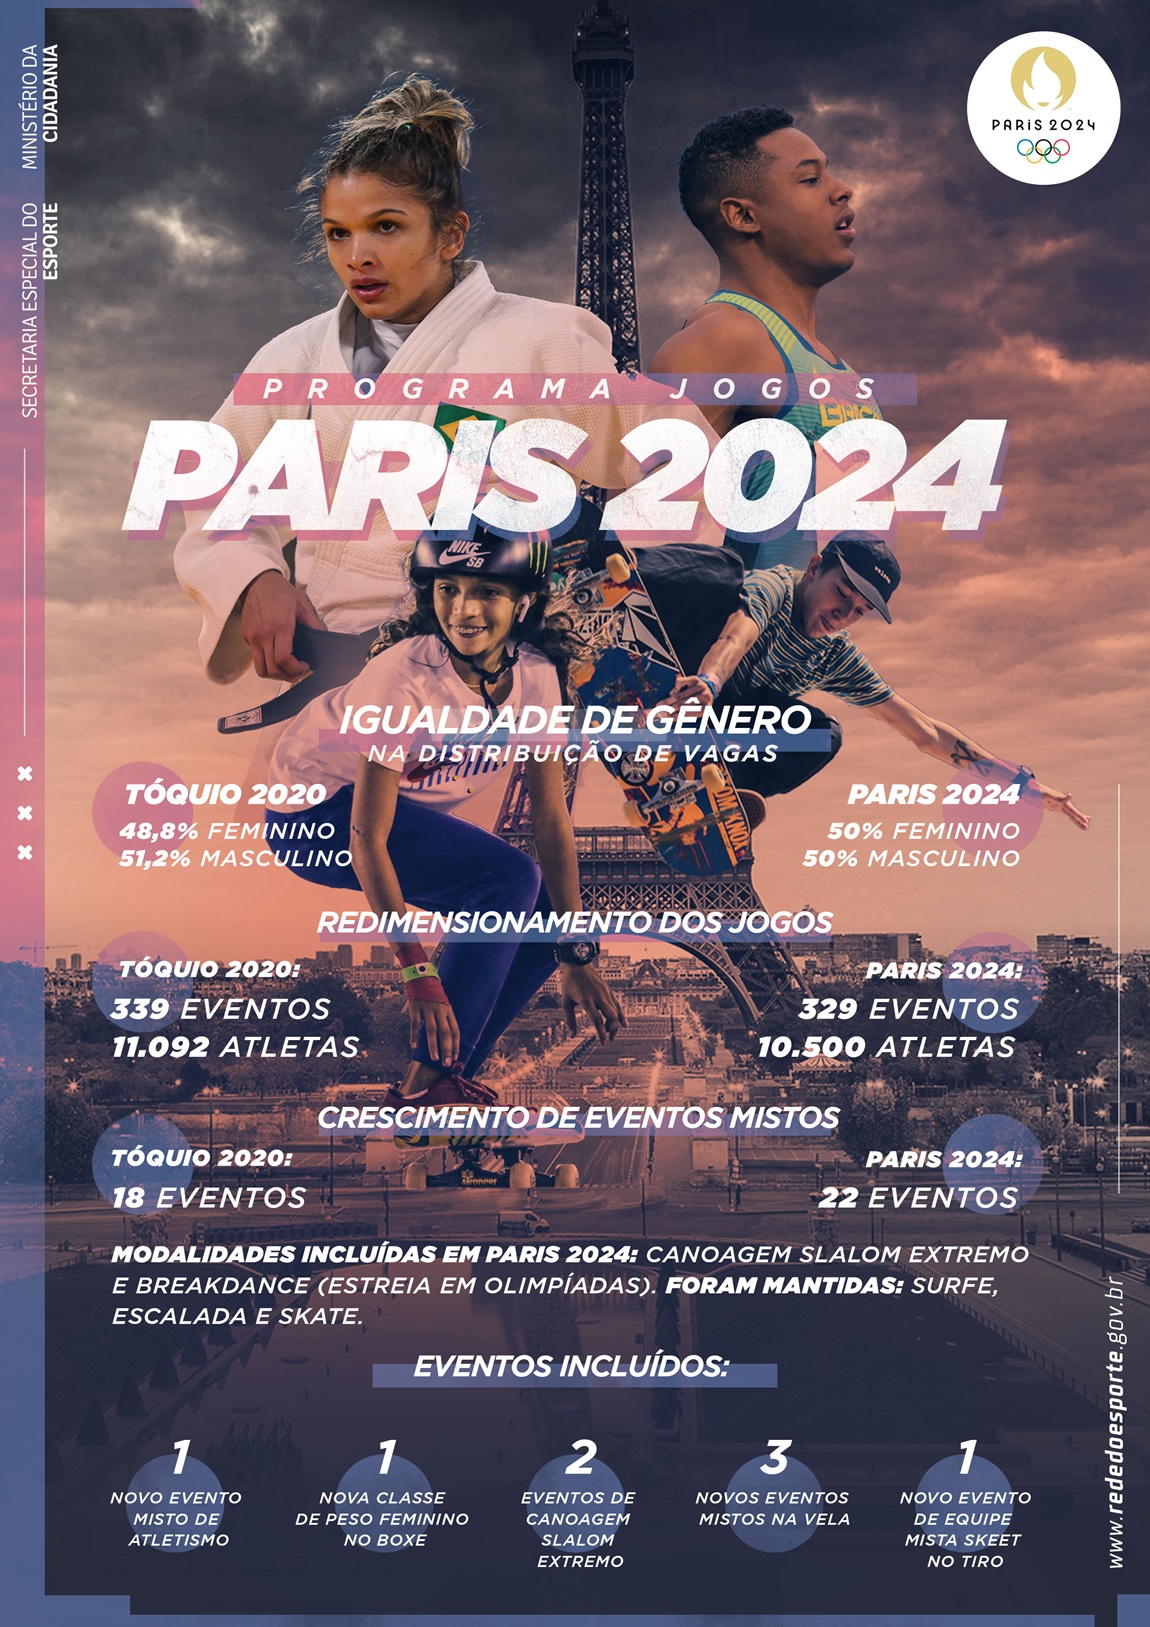 COI divulga calendário e preços das Olimpíadas de Paris 2024